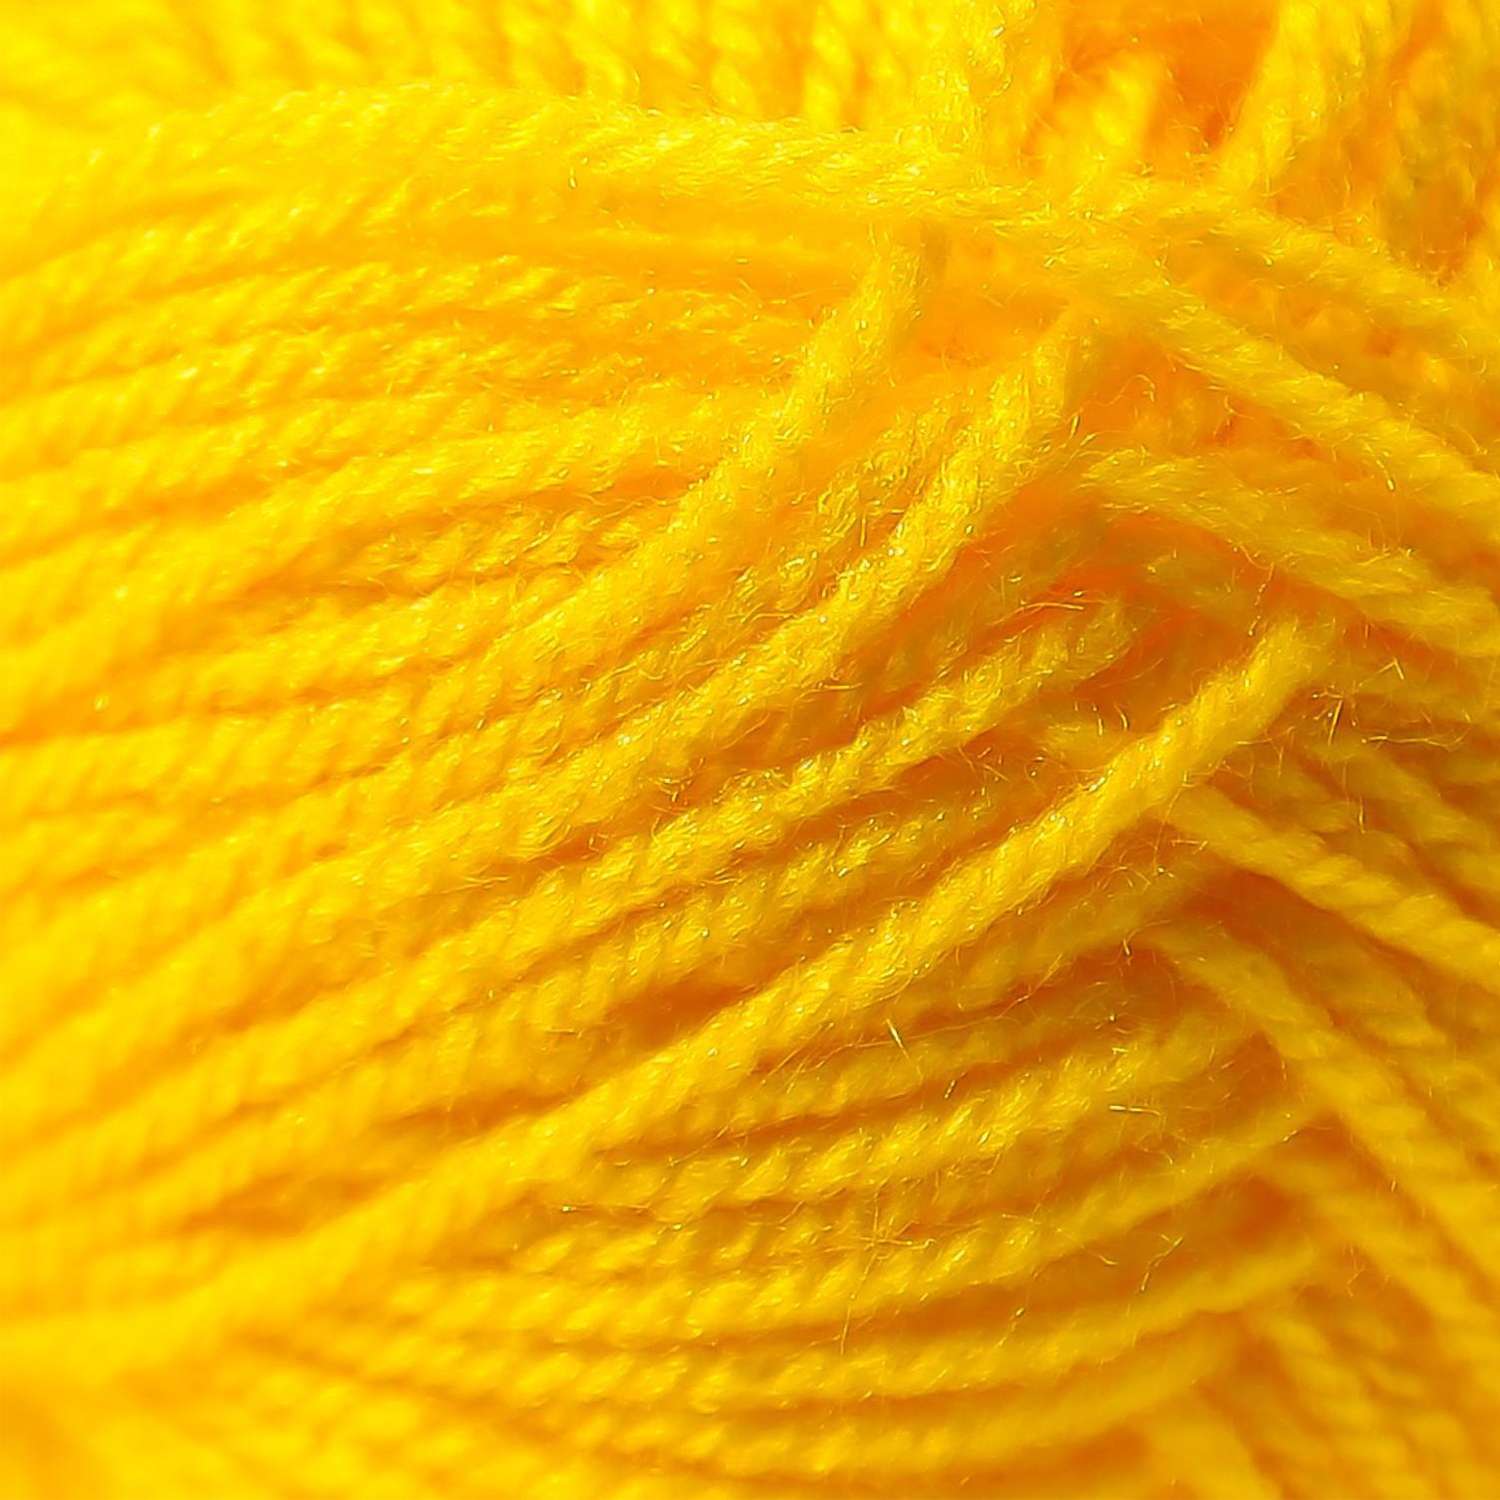 Пряжа Пехорский текстиль Желтый 1140459 - фото 3